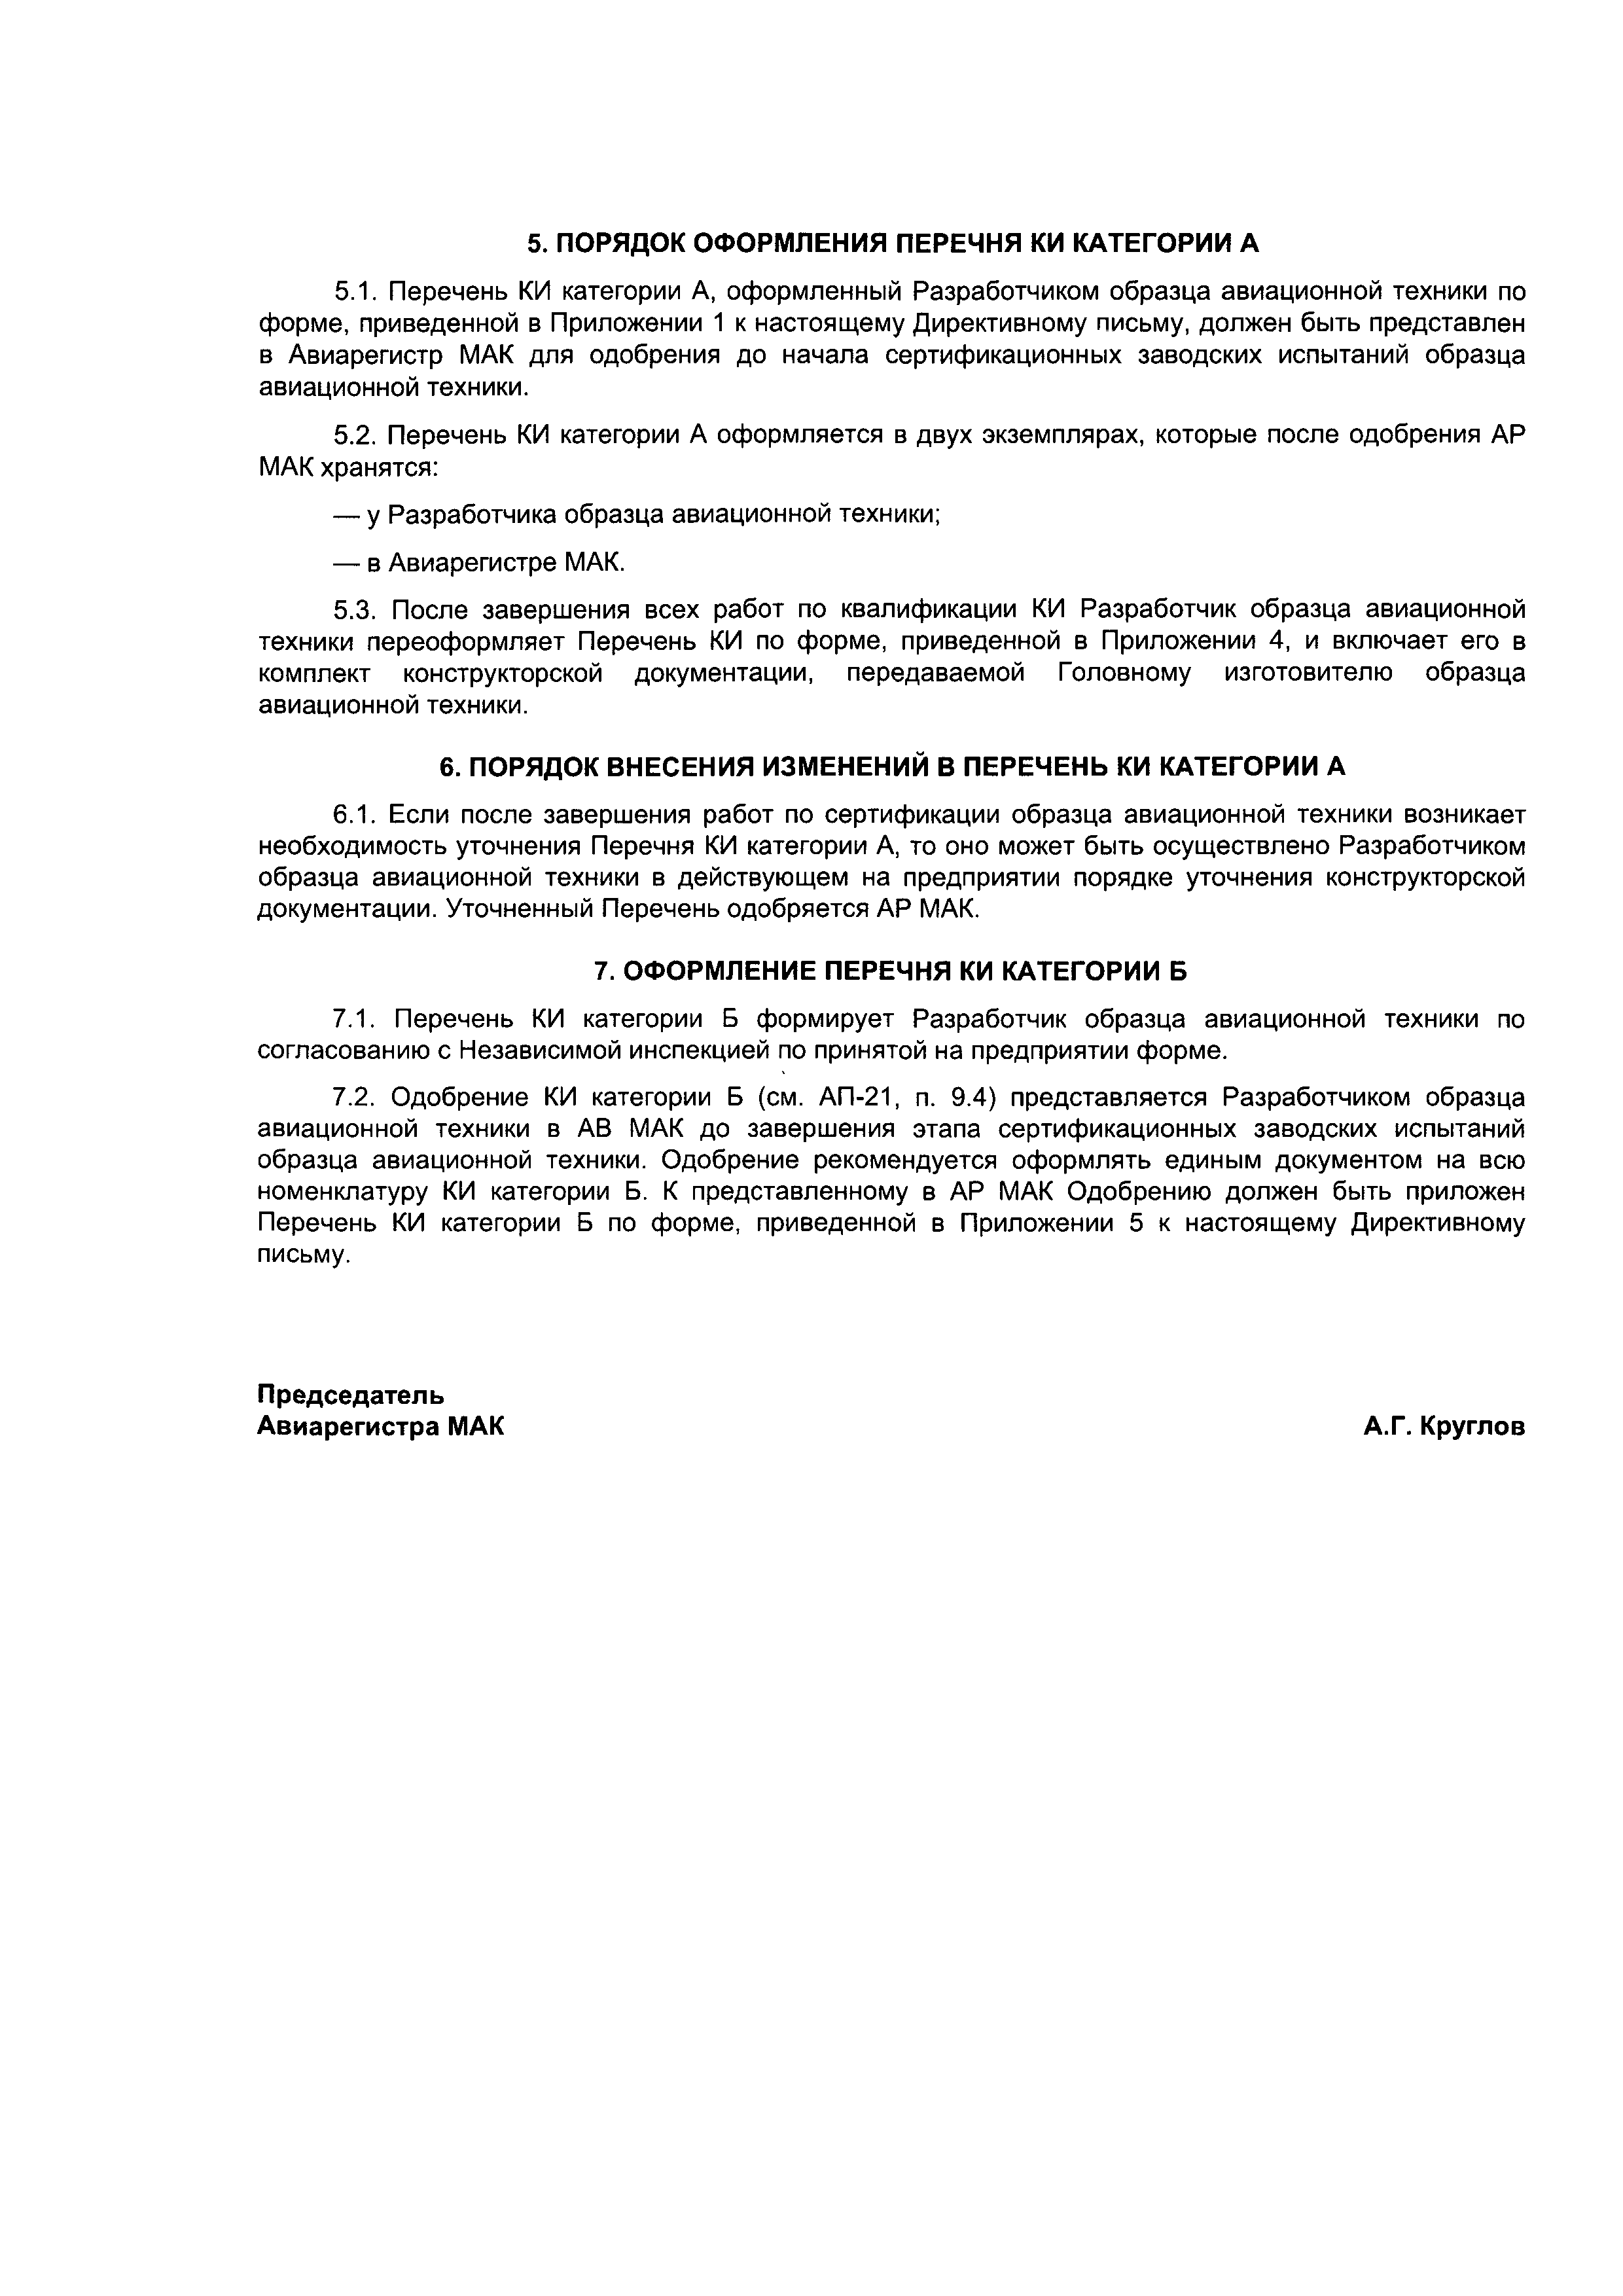 Директивное письмо 11-95/2001